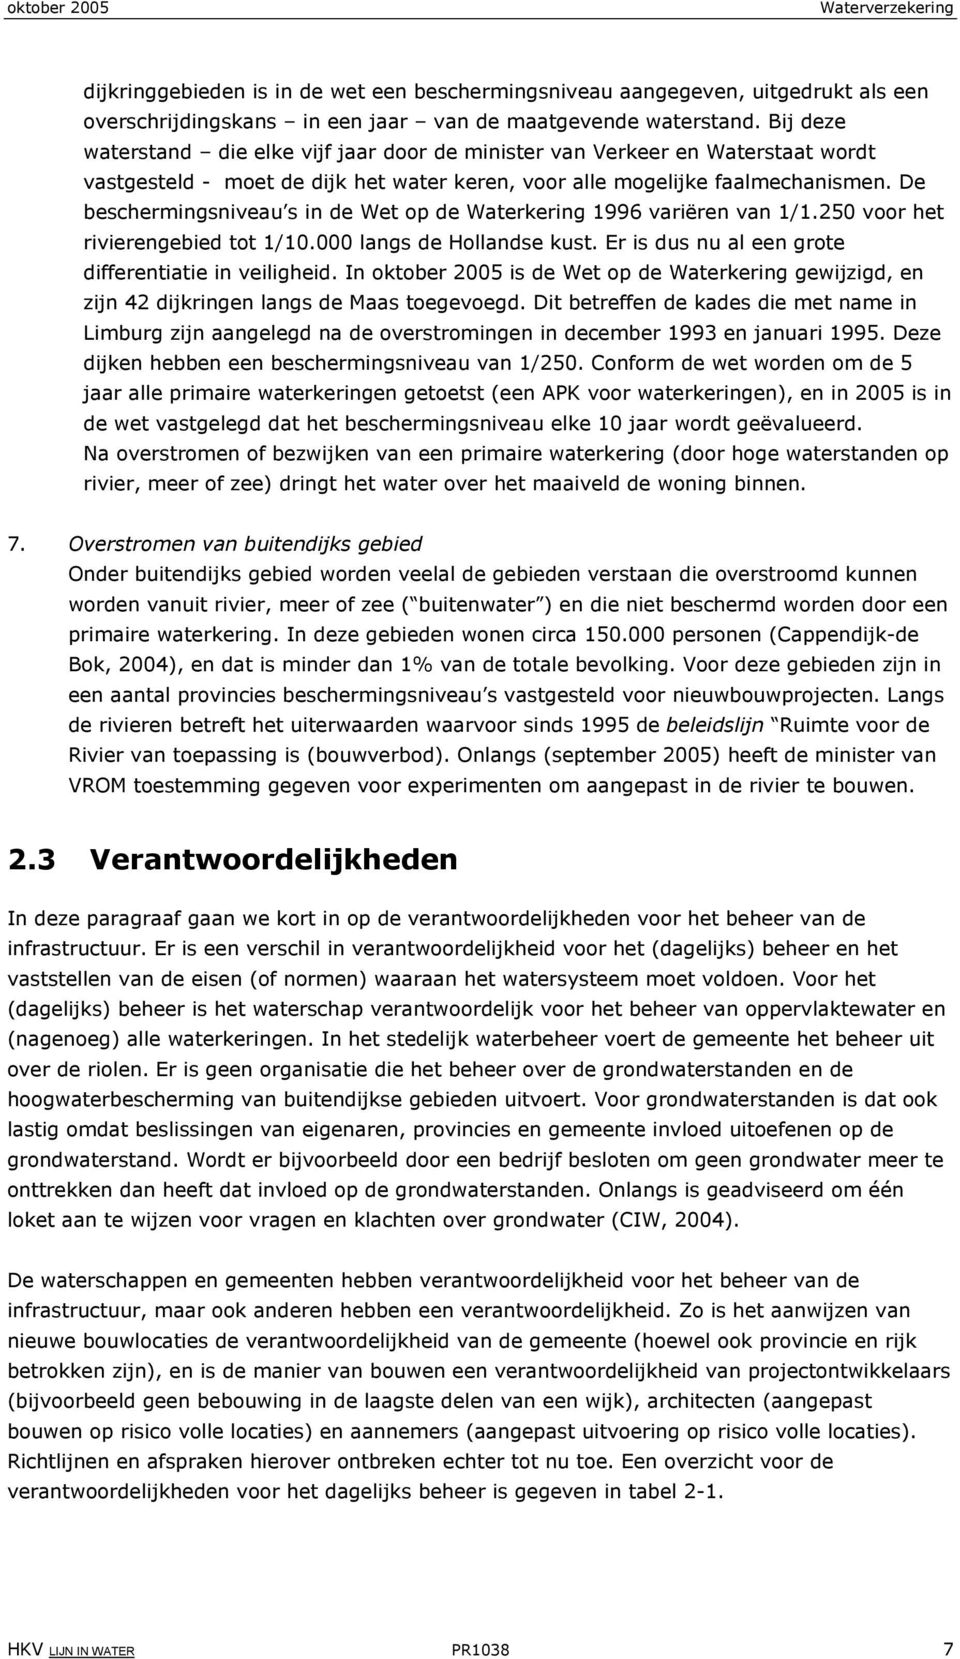 De beschermingsniveau s in de Wet op de Waterkering 1996 variëren van 1/1.250 voor het rivierengebied tot 1/10.000 langs de Hollandse kust. Er is dus nu al een grote differentiatie in veiligheid.